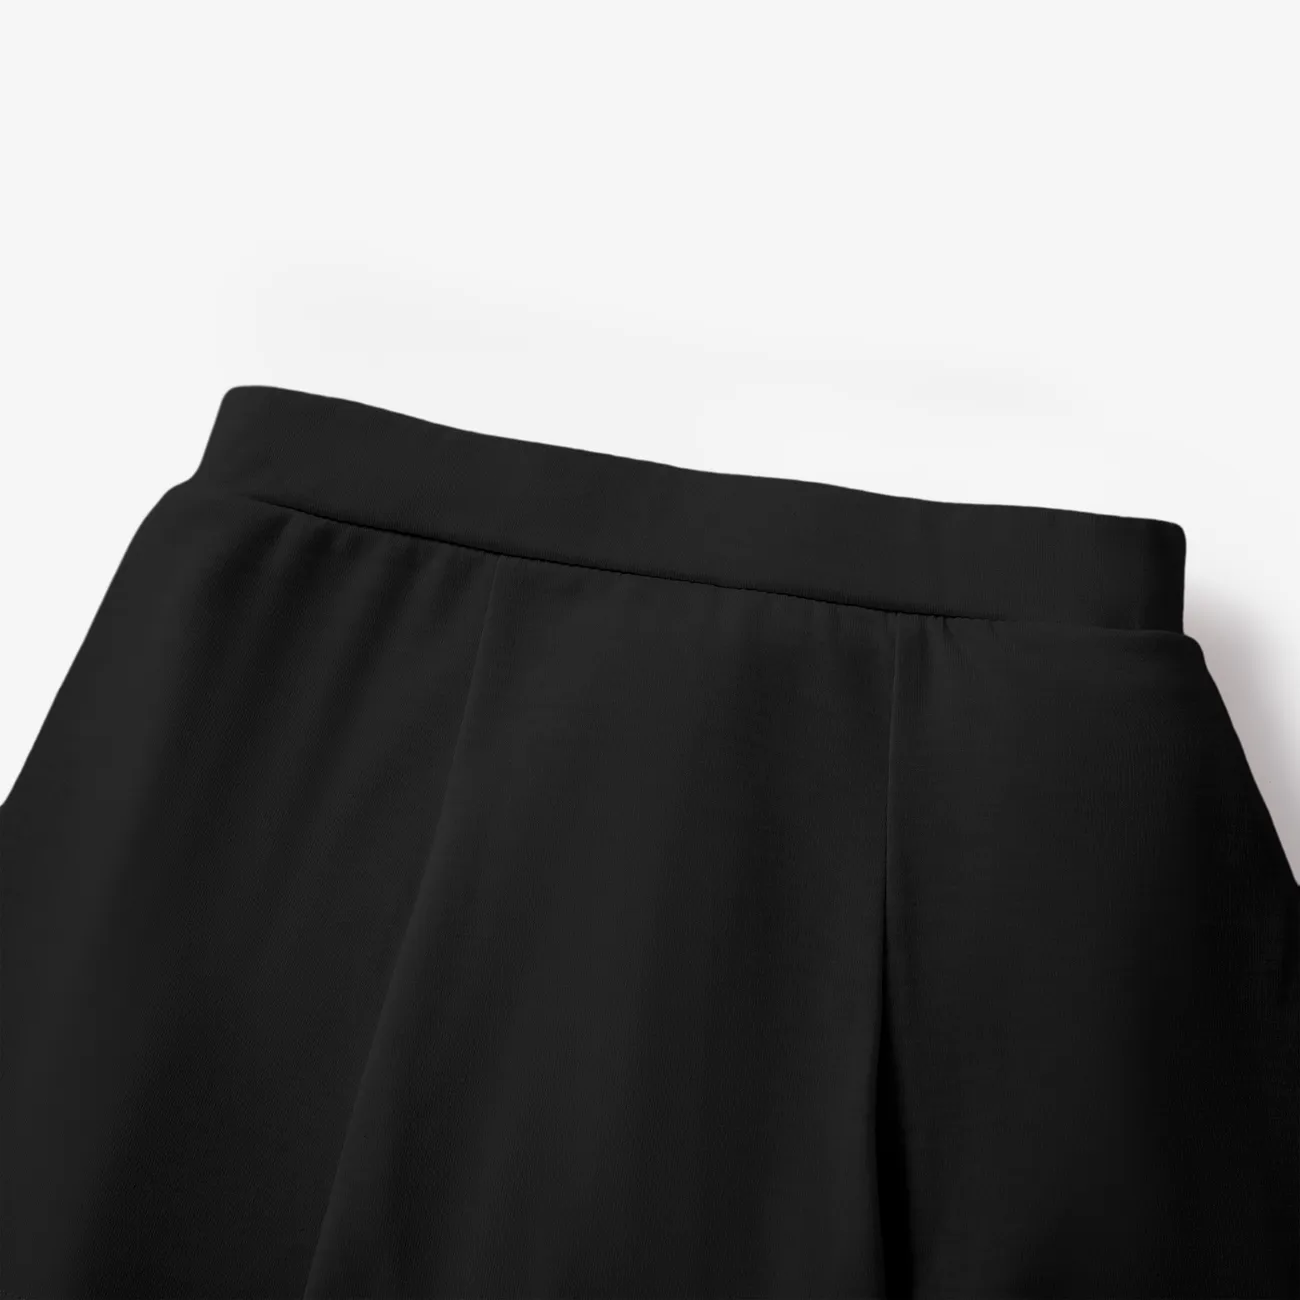 Shorts leggings de saia falsa de cor sólida para menina infantil Preto big image 1